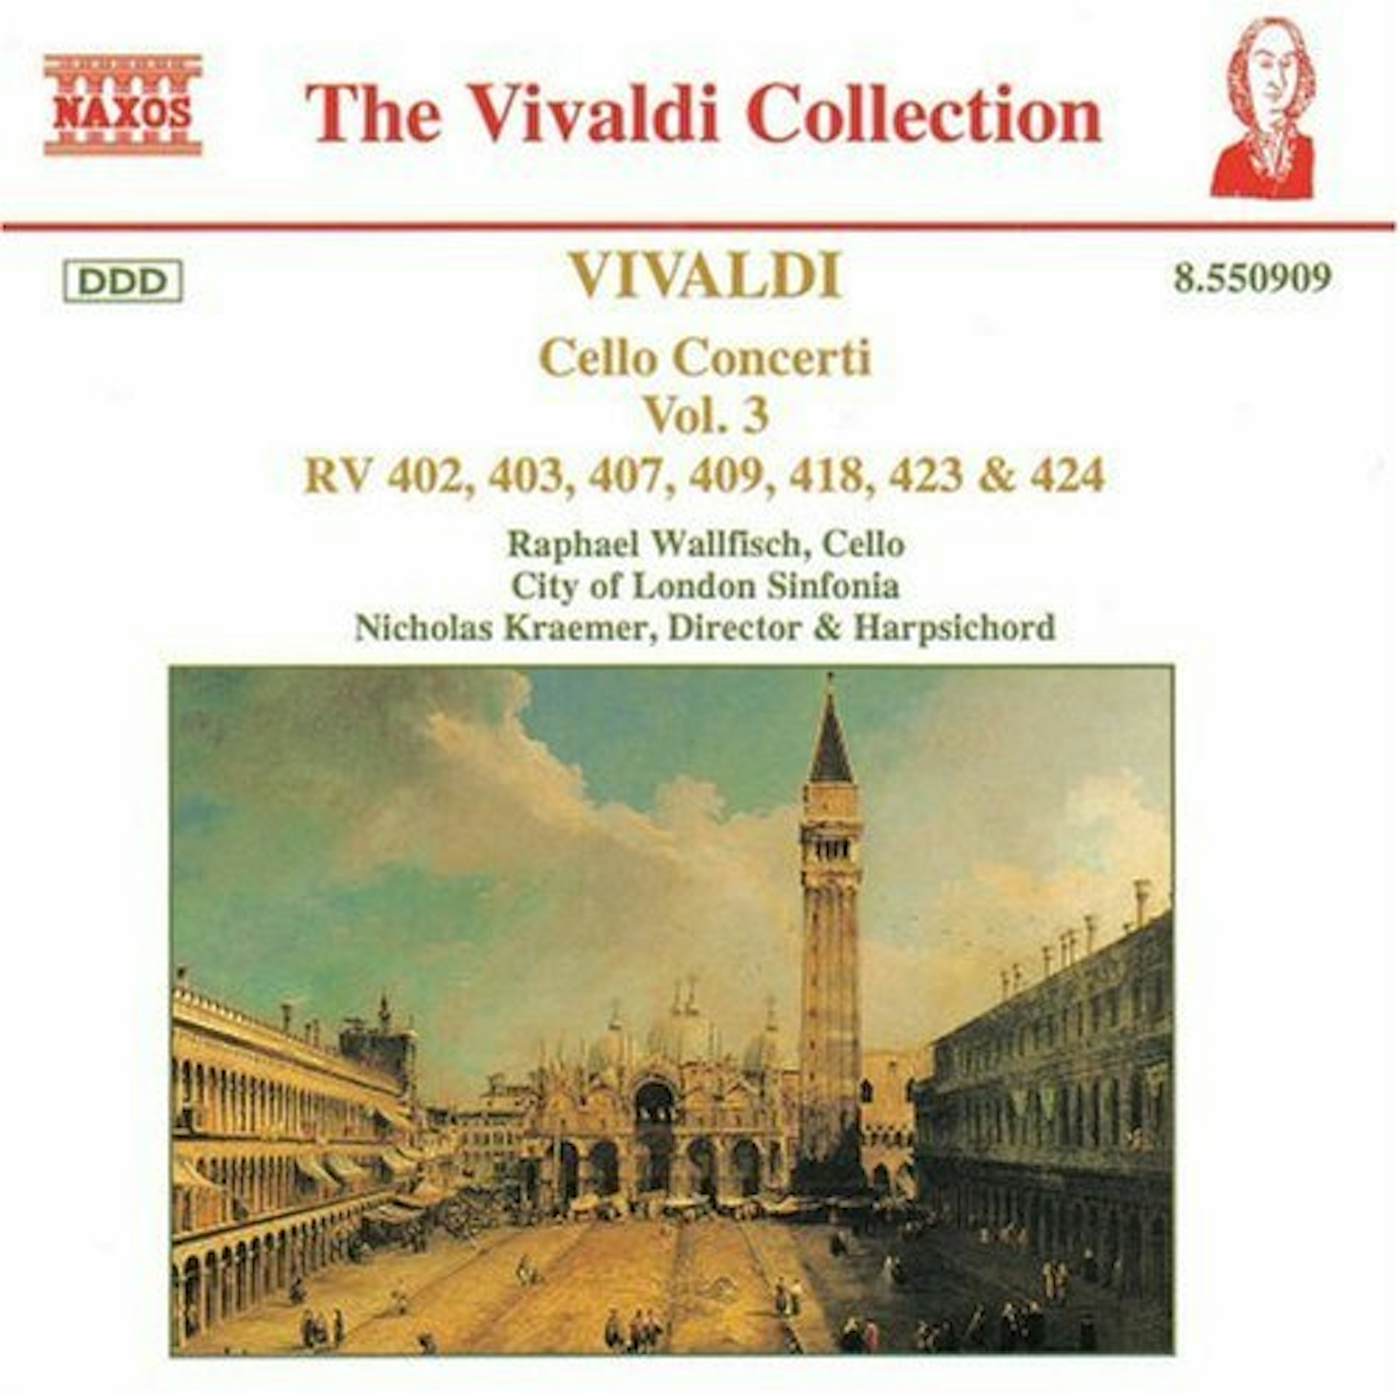 Antonio Vivaldi CELLO CONCERTOS VOL. 3 CD